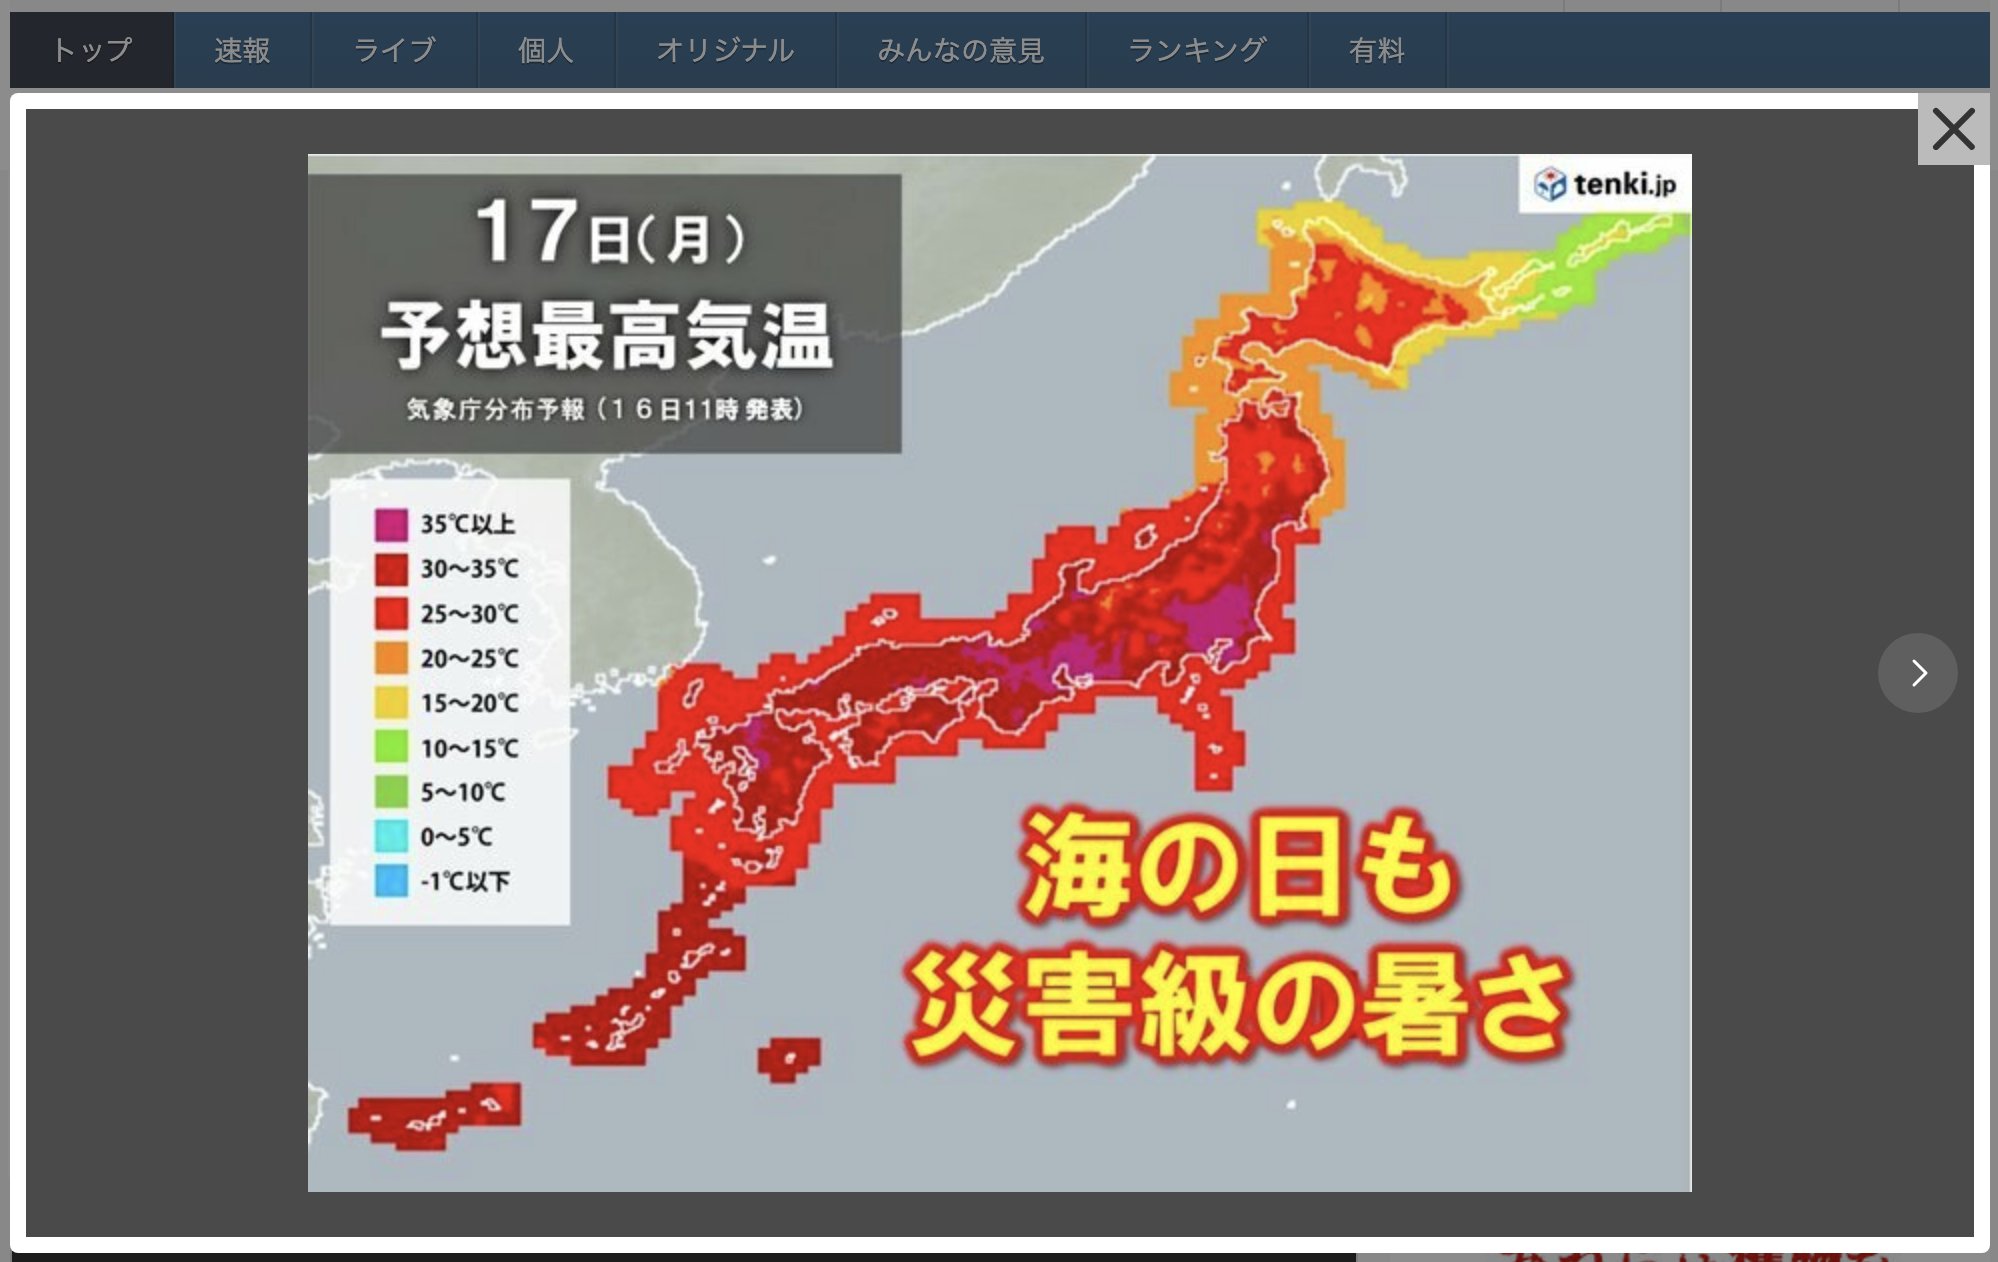 Καύσωνας: Προειδοποίηση για τον κίνδυνο θερμοπληξίας εξέδωσε η Ιαπωνία